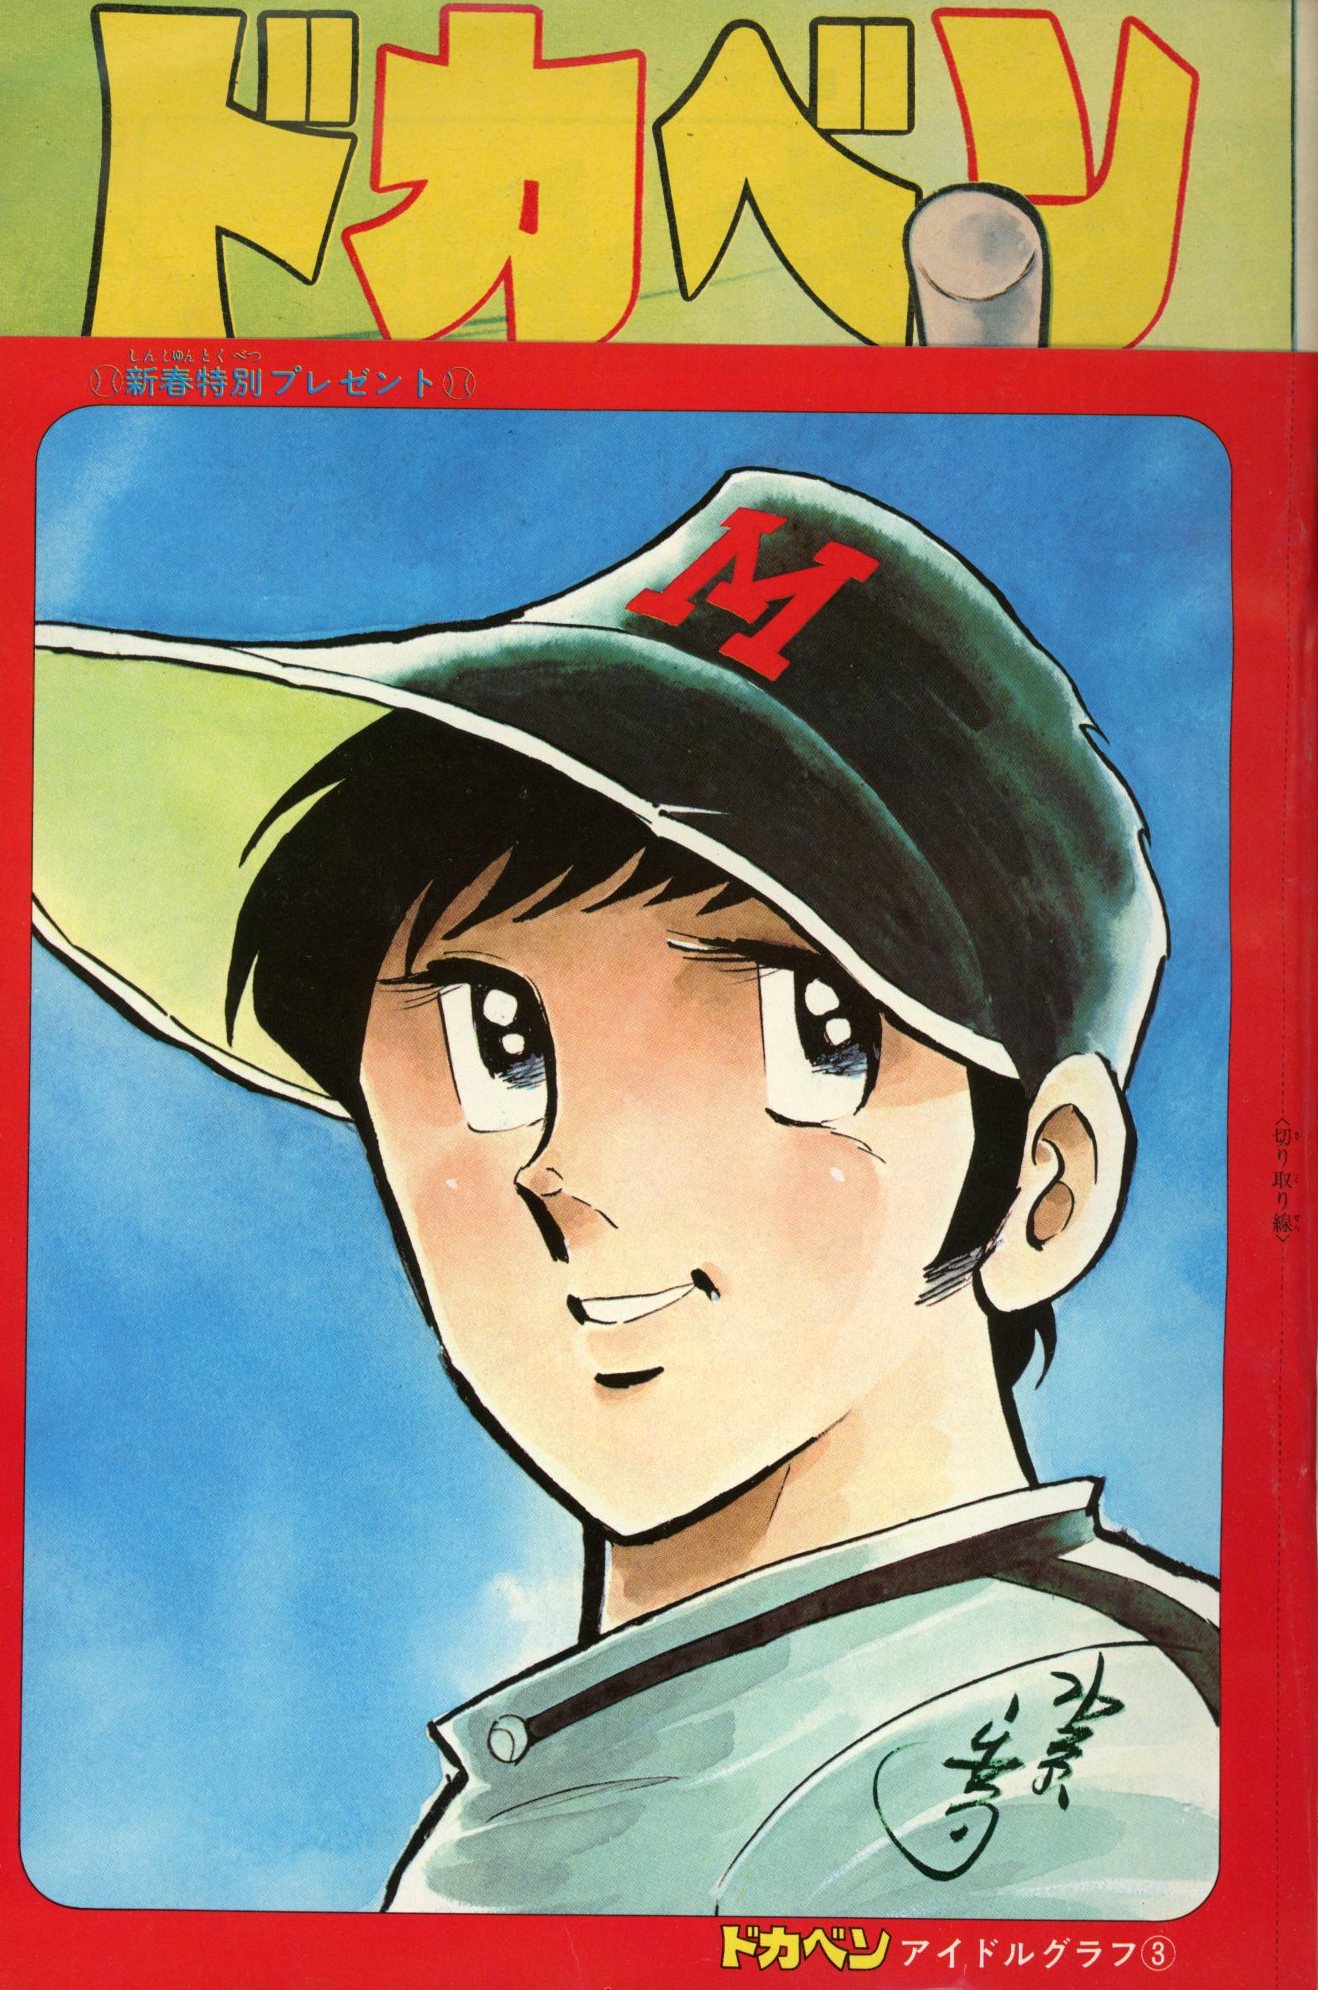 秋田書店 1978年(昭和53年)の漫画雑誌 週刊少年チャンピオン1978年 